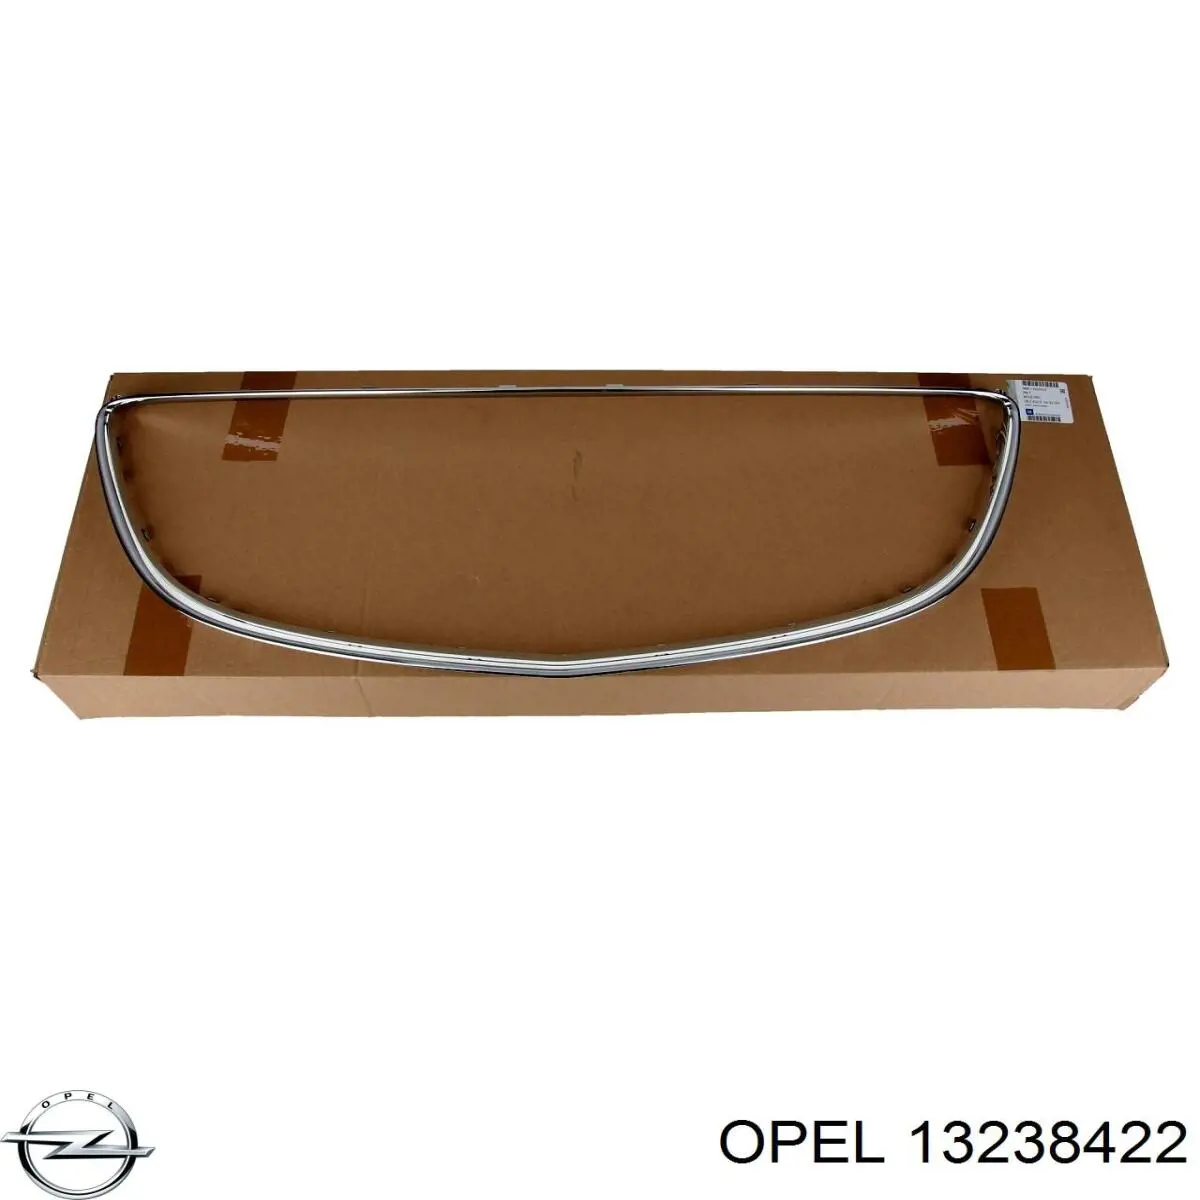 13238422 Opel placa sobreposta (carcaça de grelha do radiador)